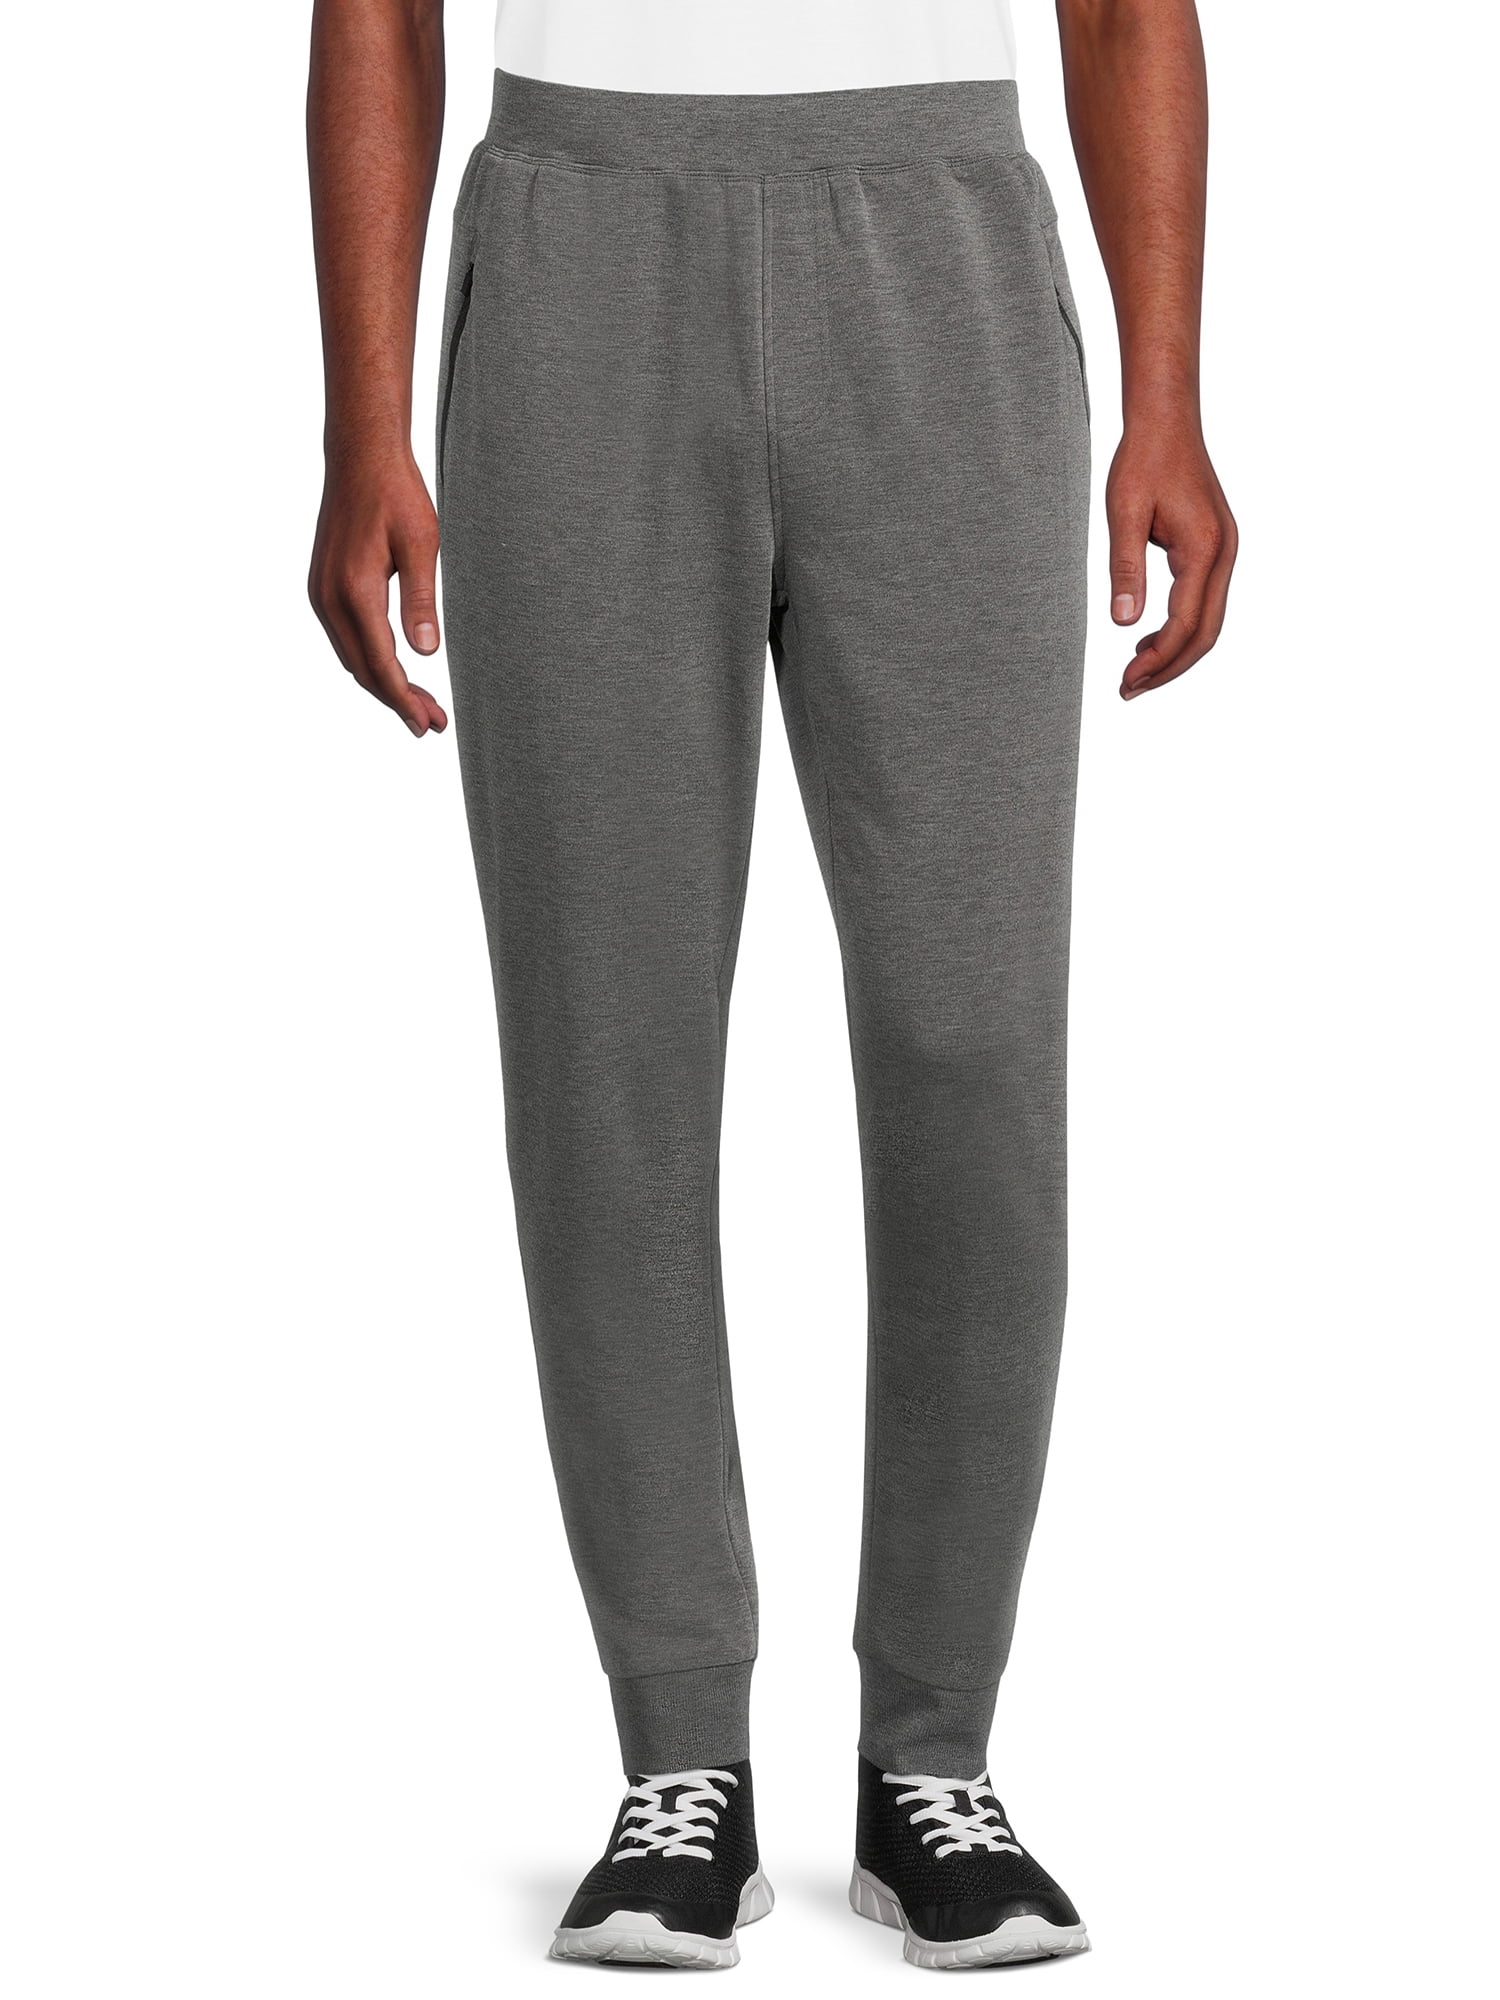 Jockey Essentials Men's Cozy Fleece Sweatpants with Angled Zip Pockets ...